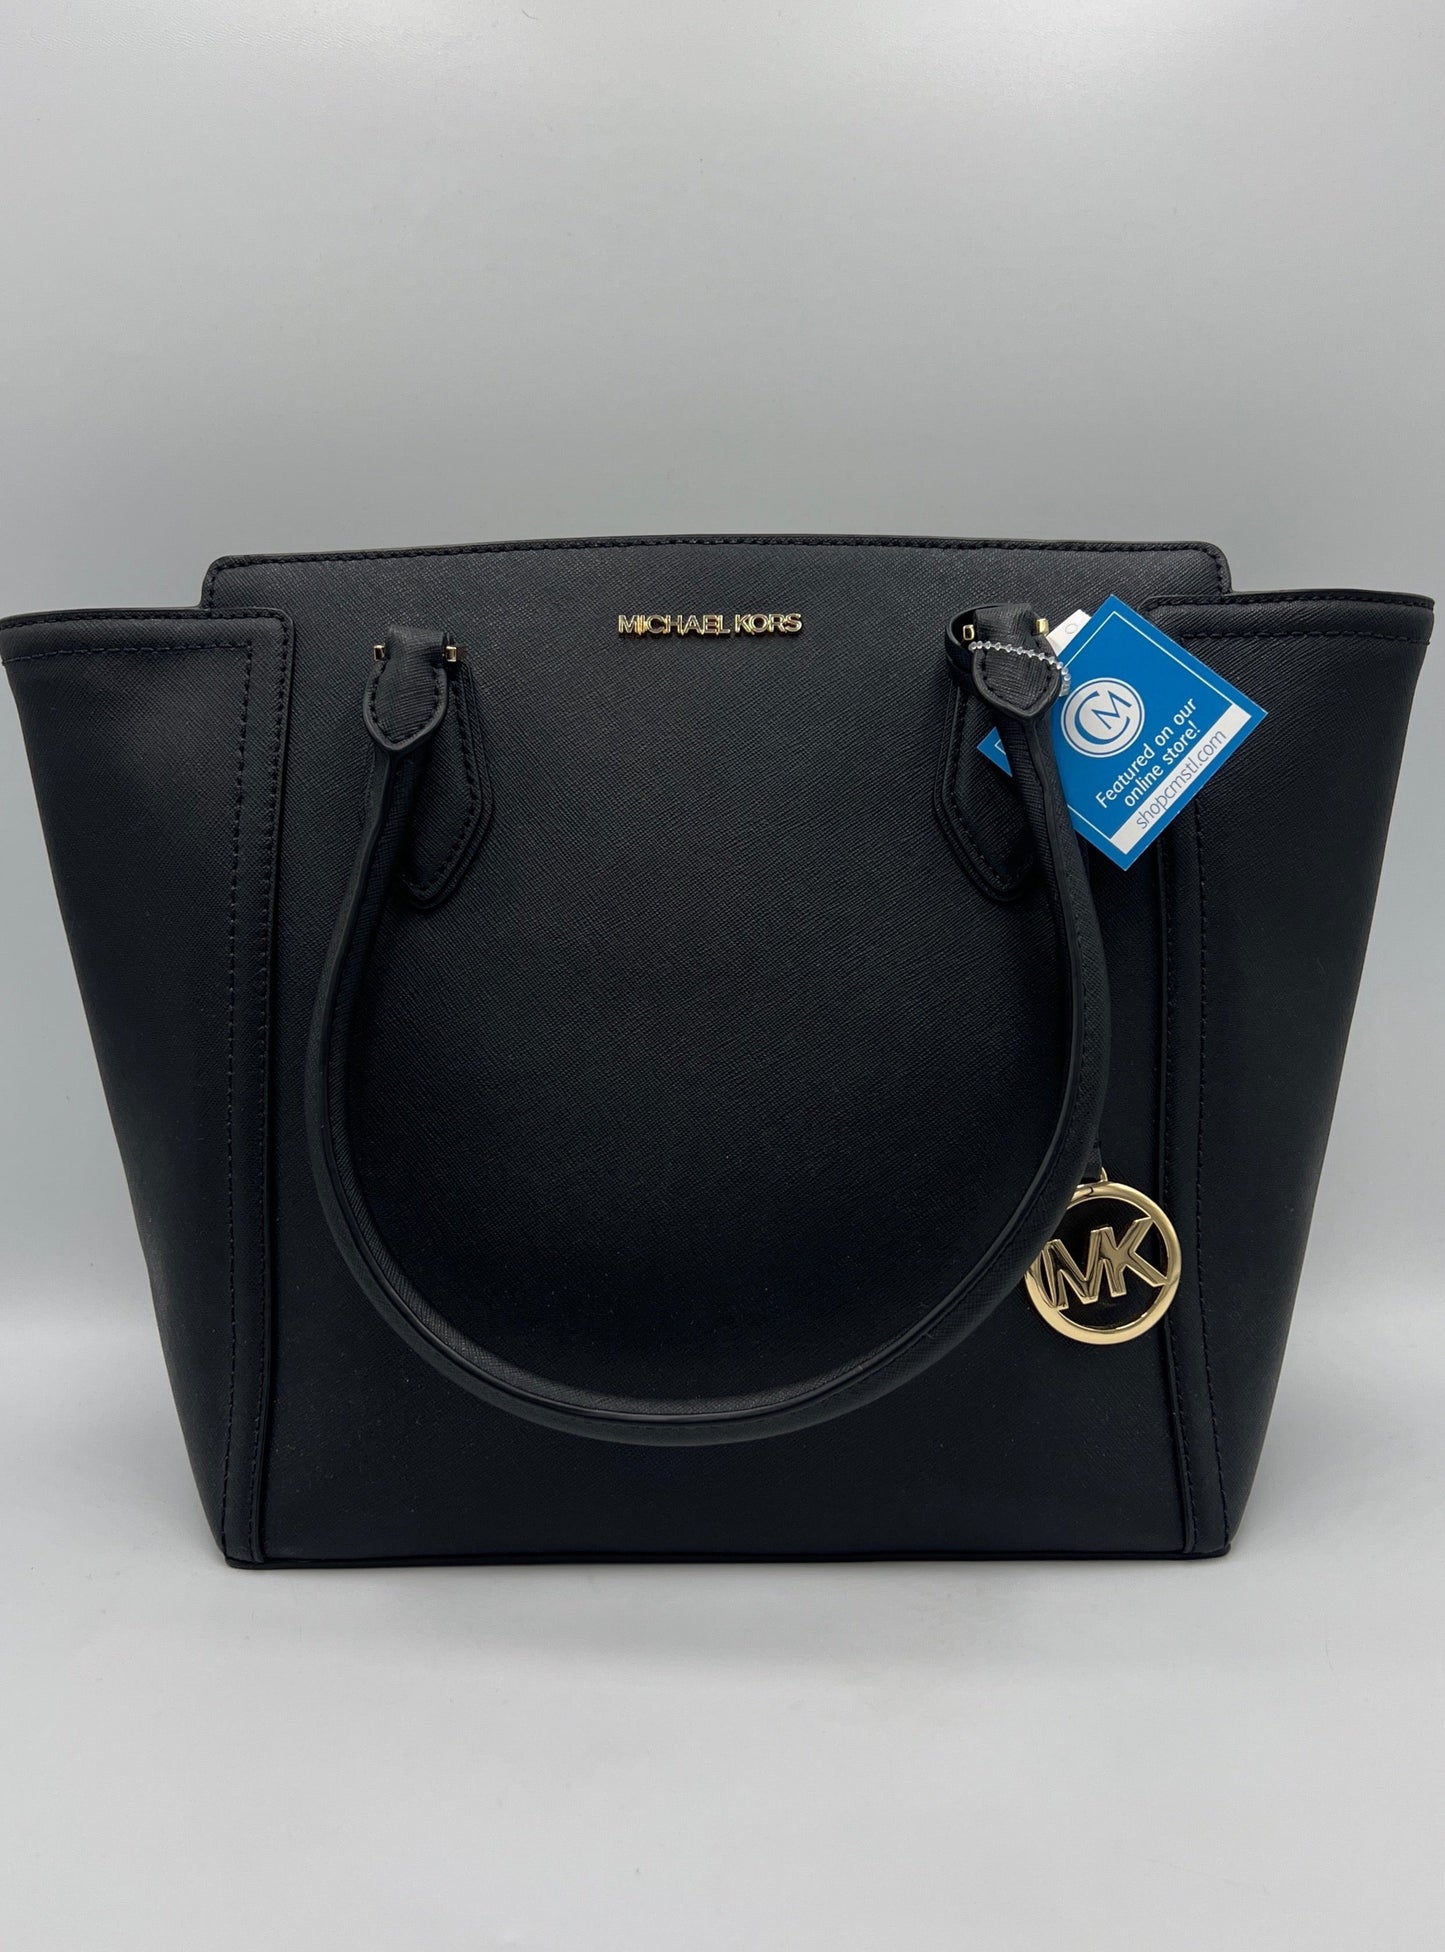 Like New! Michael Kors Smooth Leather Tote / Handbag